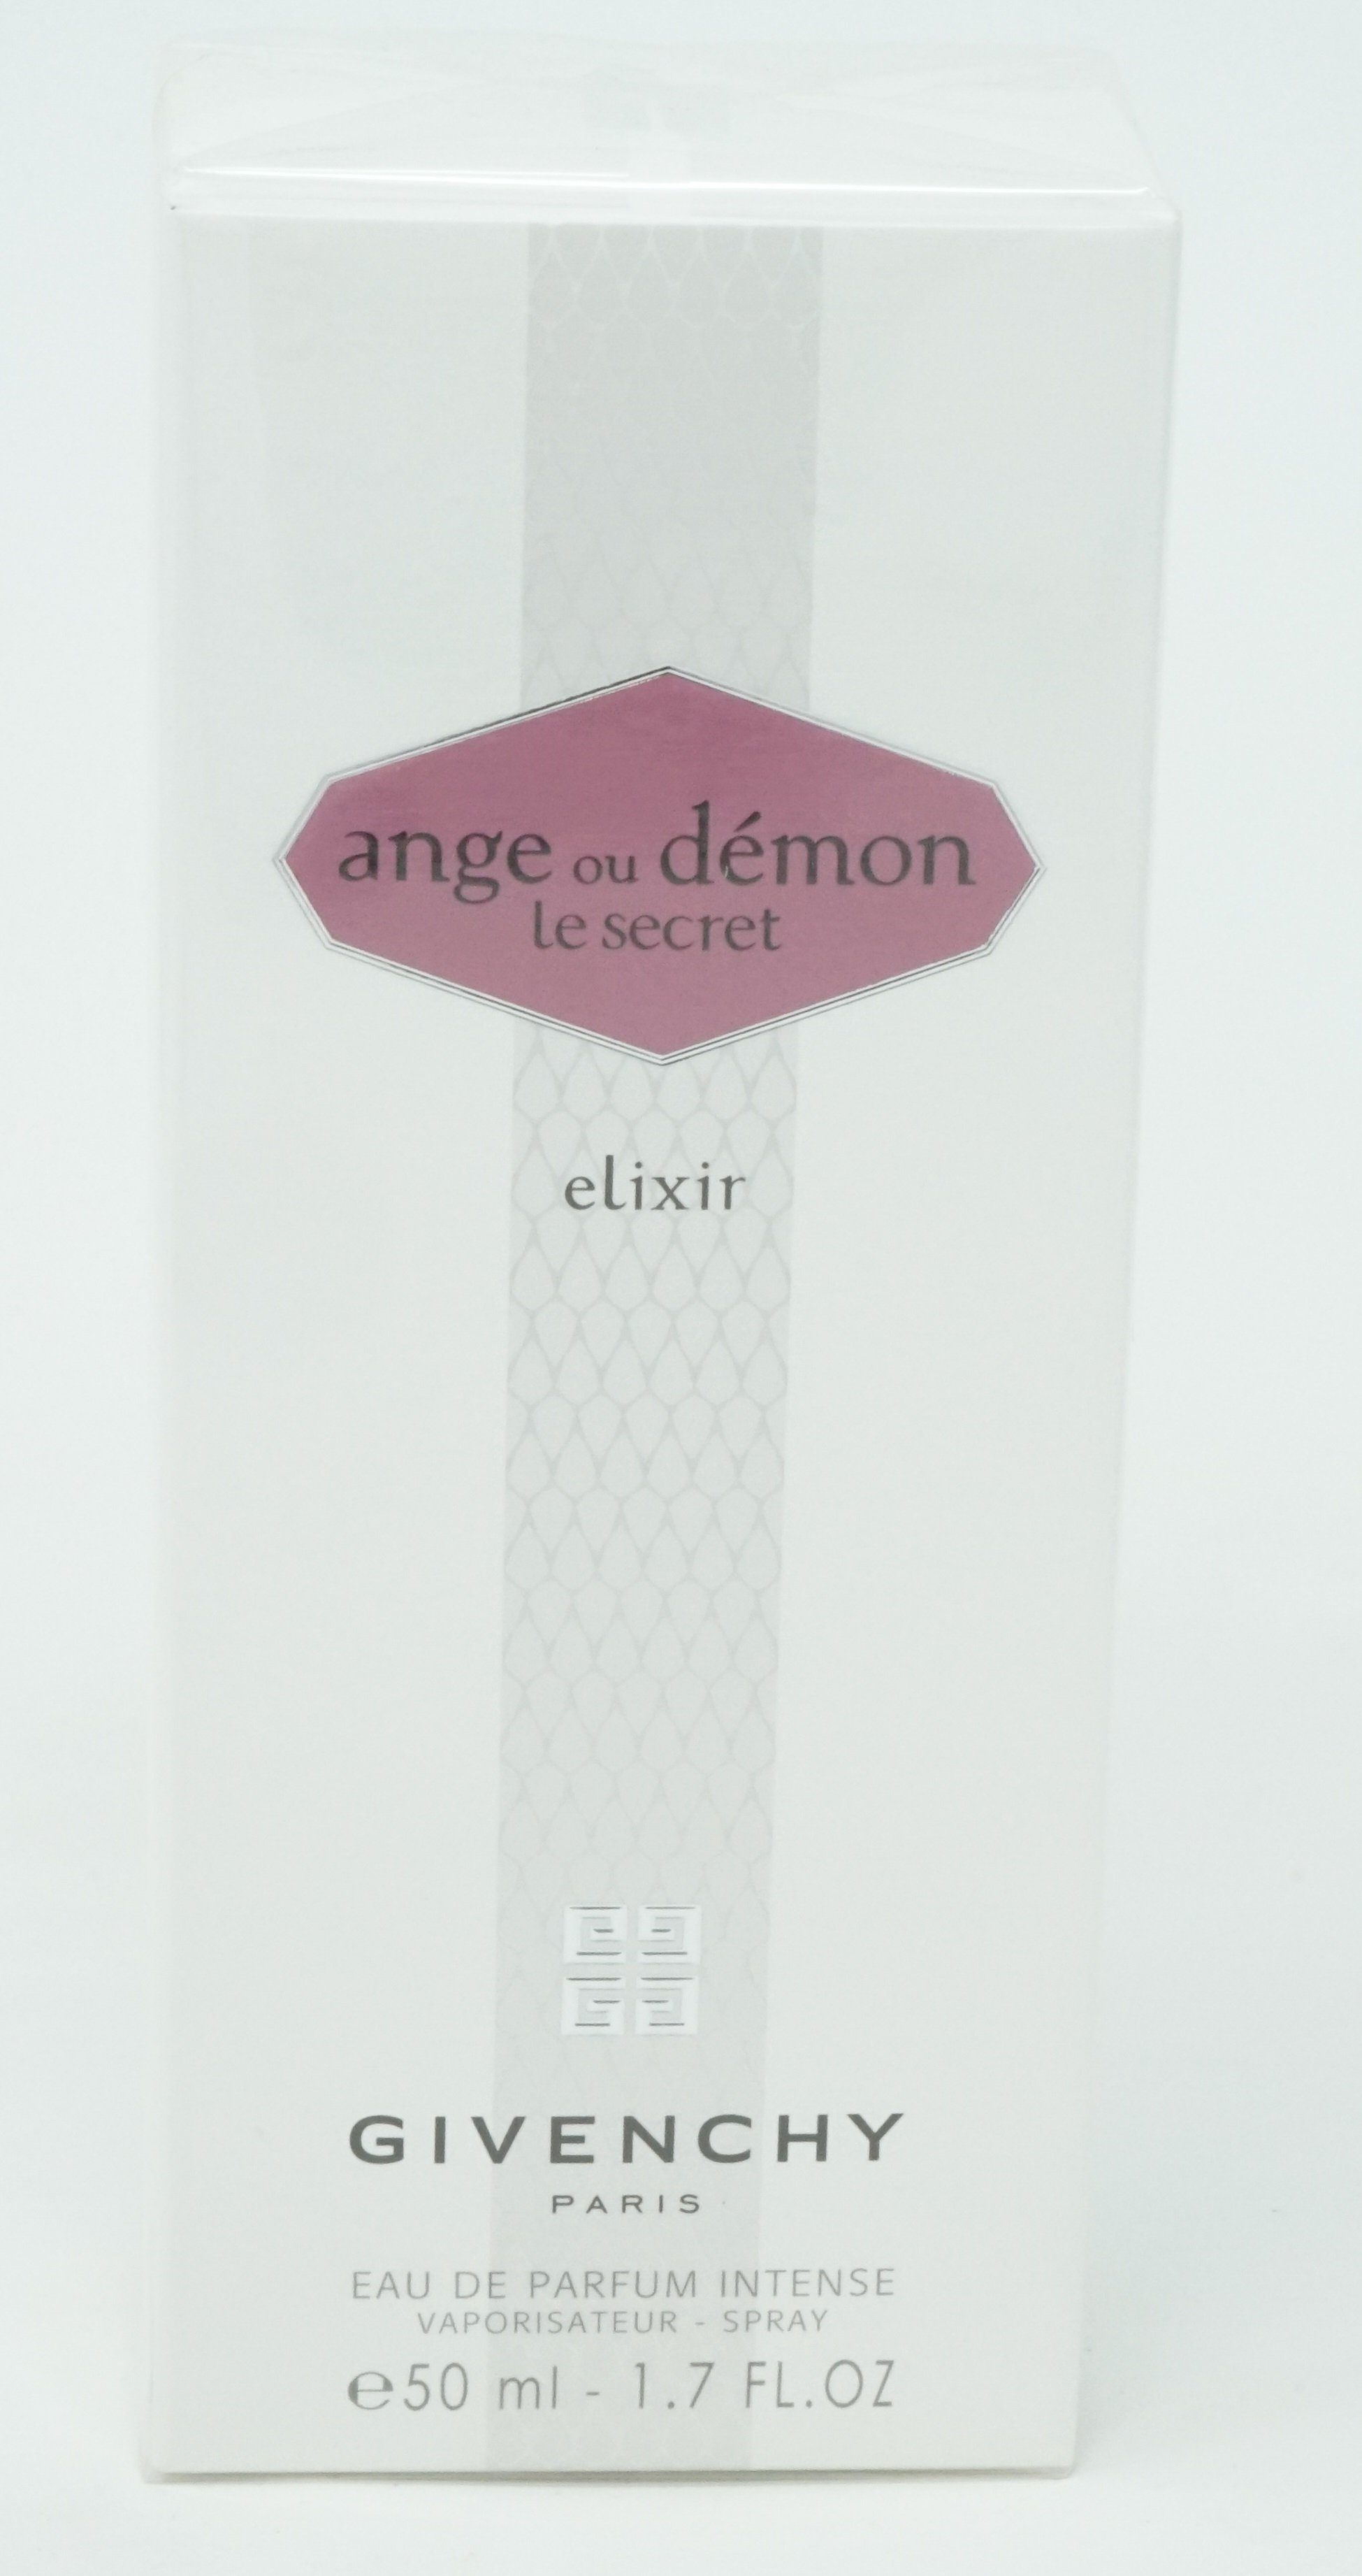 GIVENCHY Eau de Parfum Ange Demon ou Givenchy Secret 50ml Eau de Parfum Intense Elixir Le